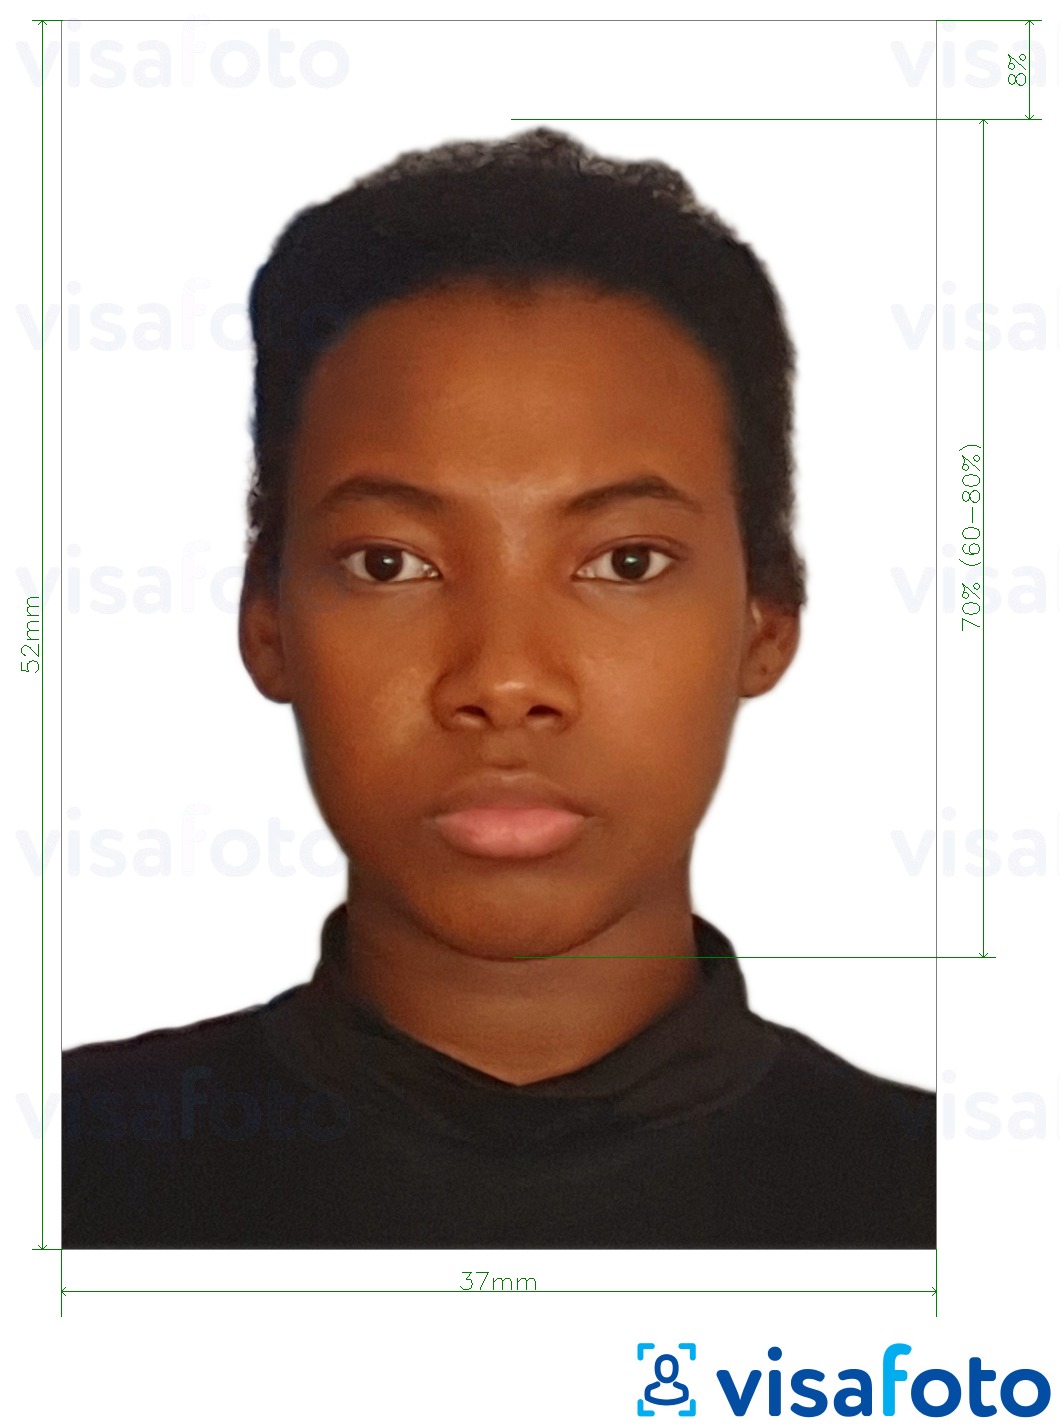 Przykład zdjęcia dla Paszport Namibii 37x52 mm (3,7x5,2 cm) z podaniem dokładnego rozmiaru.